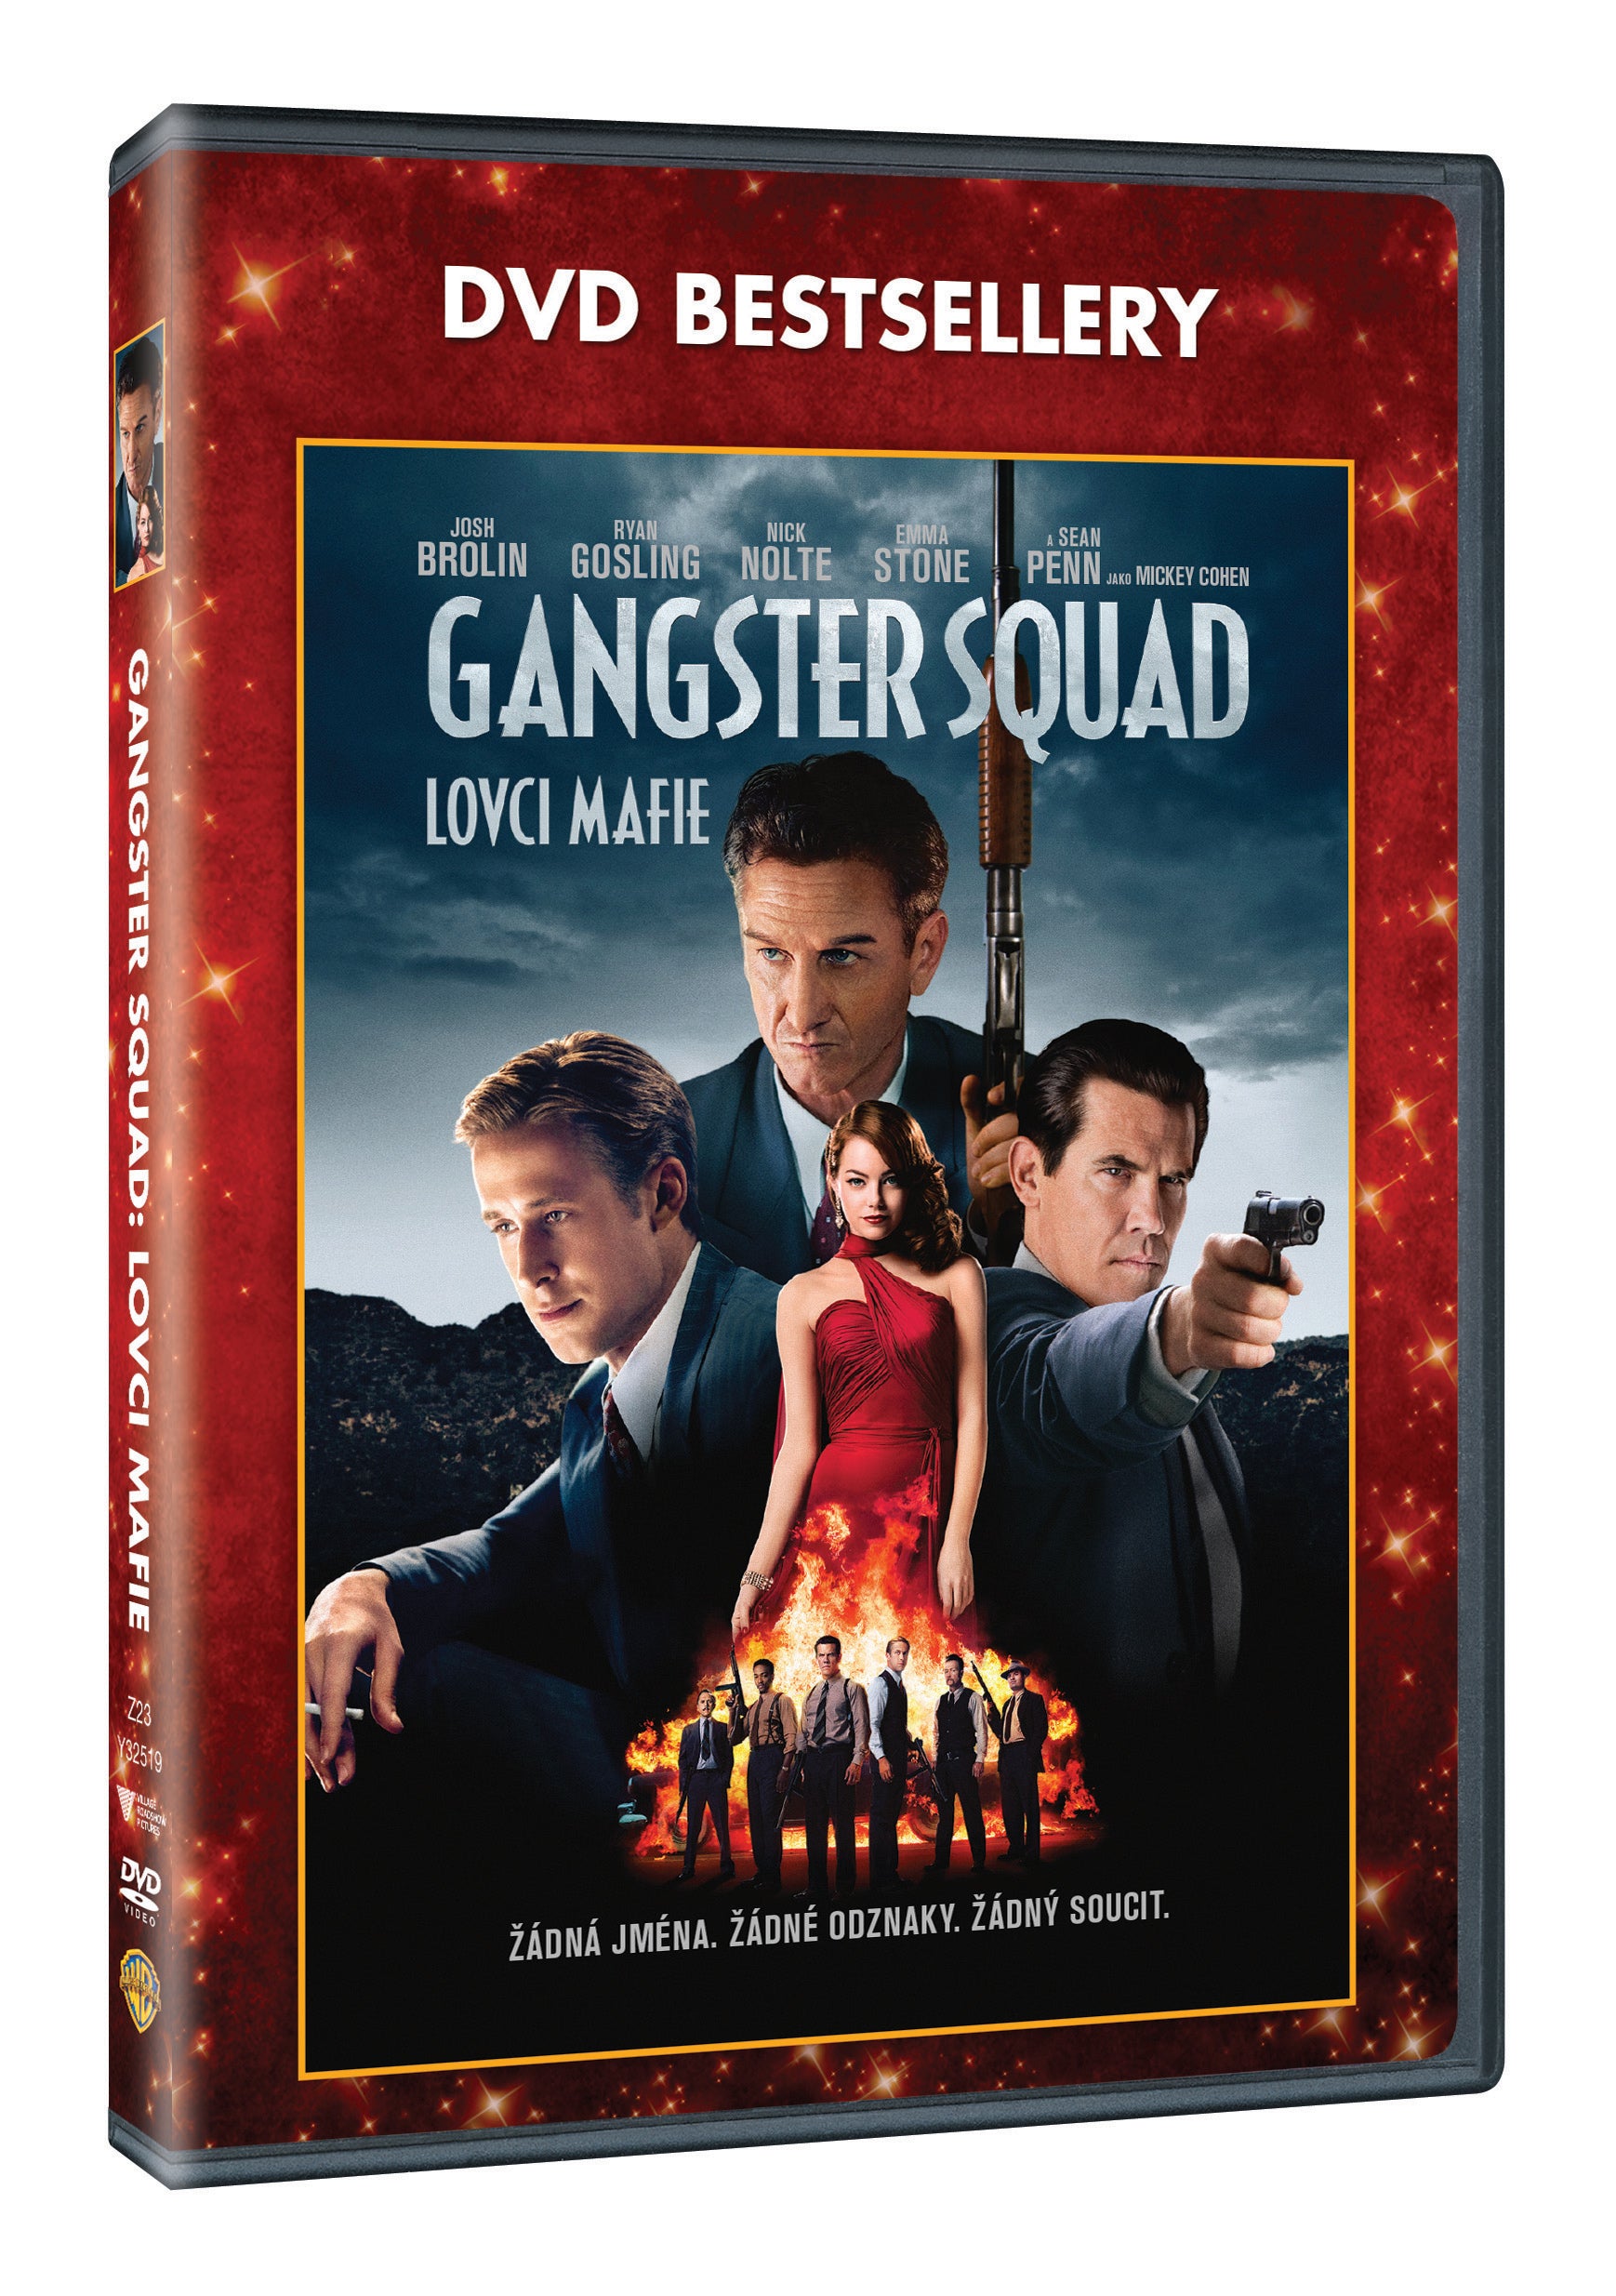 Gangster Squad - Lovci mafie - DVD-Bestseller (Gangster Squad)